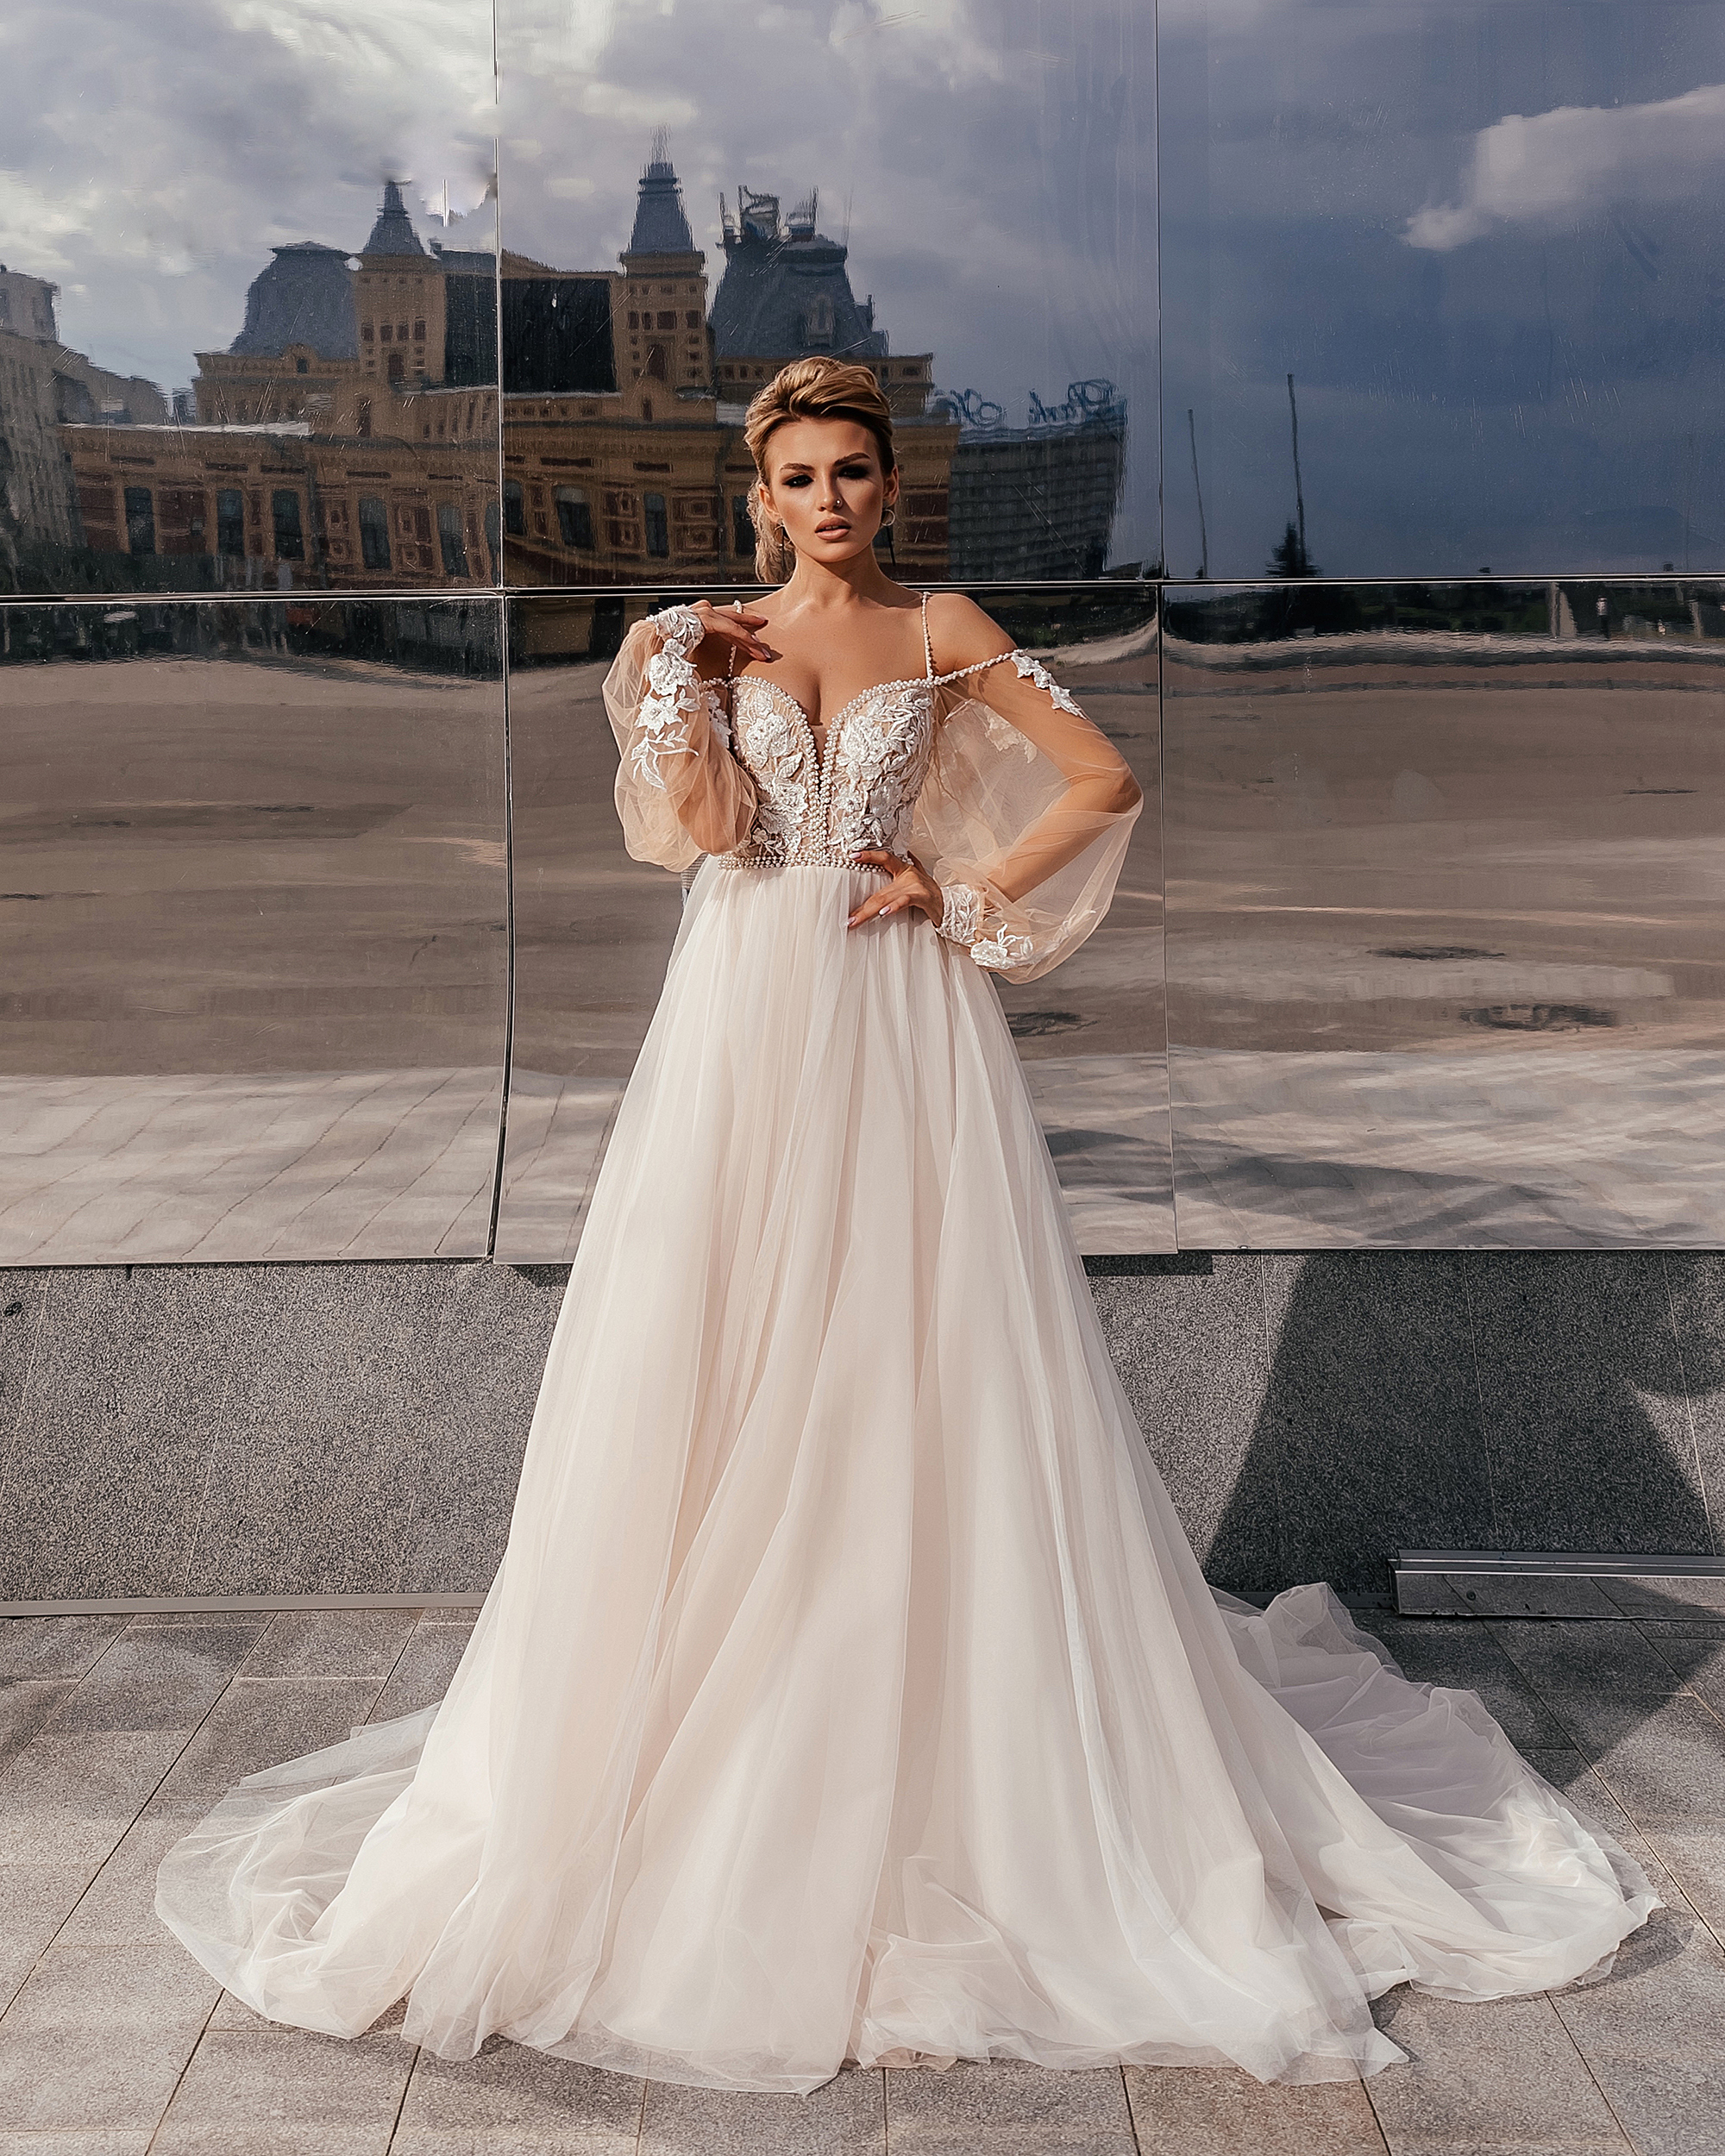 Свадебное платье под заказ G-2021-11